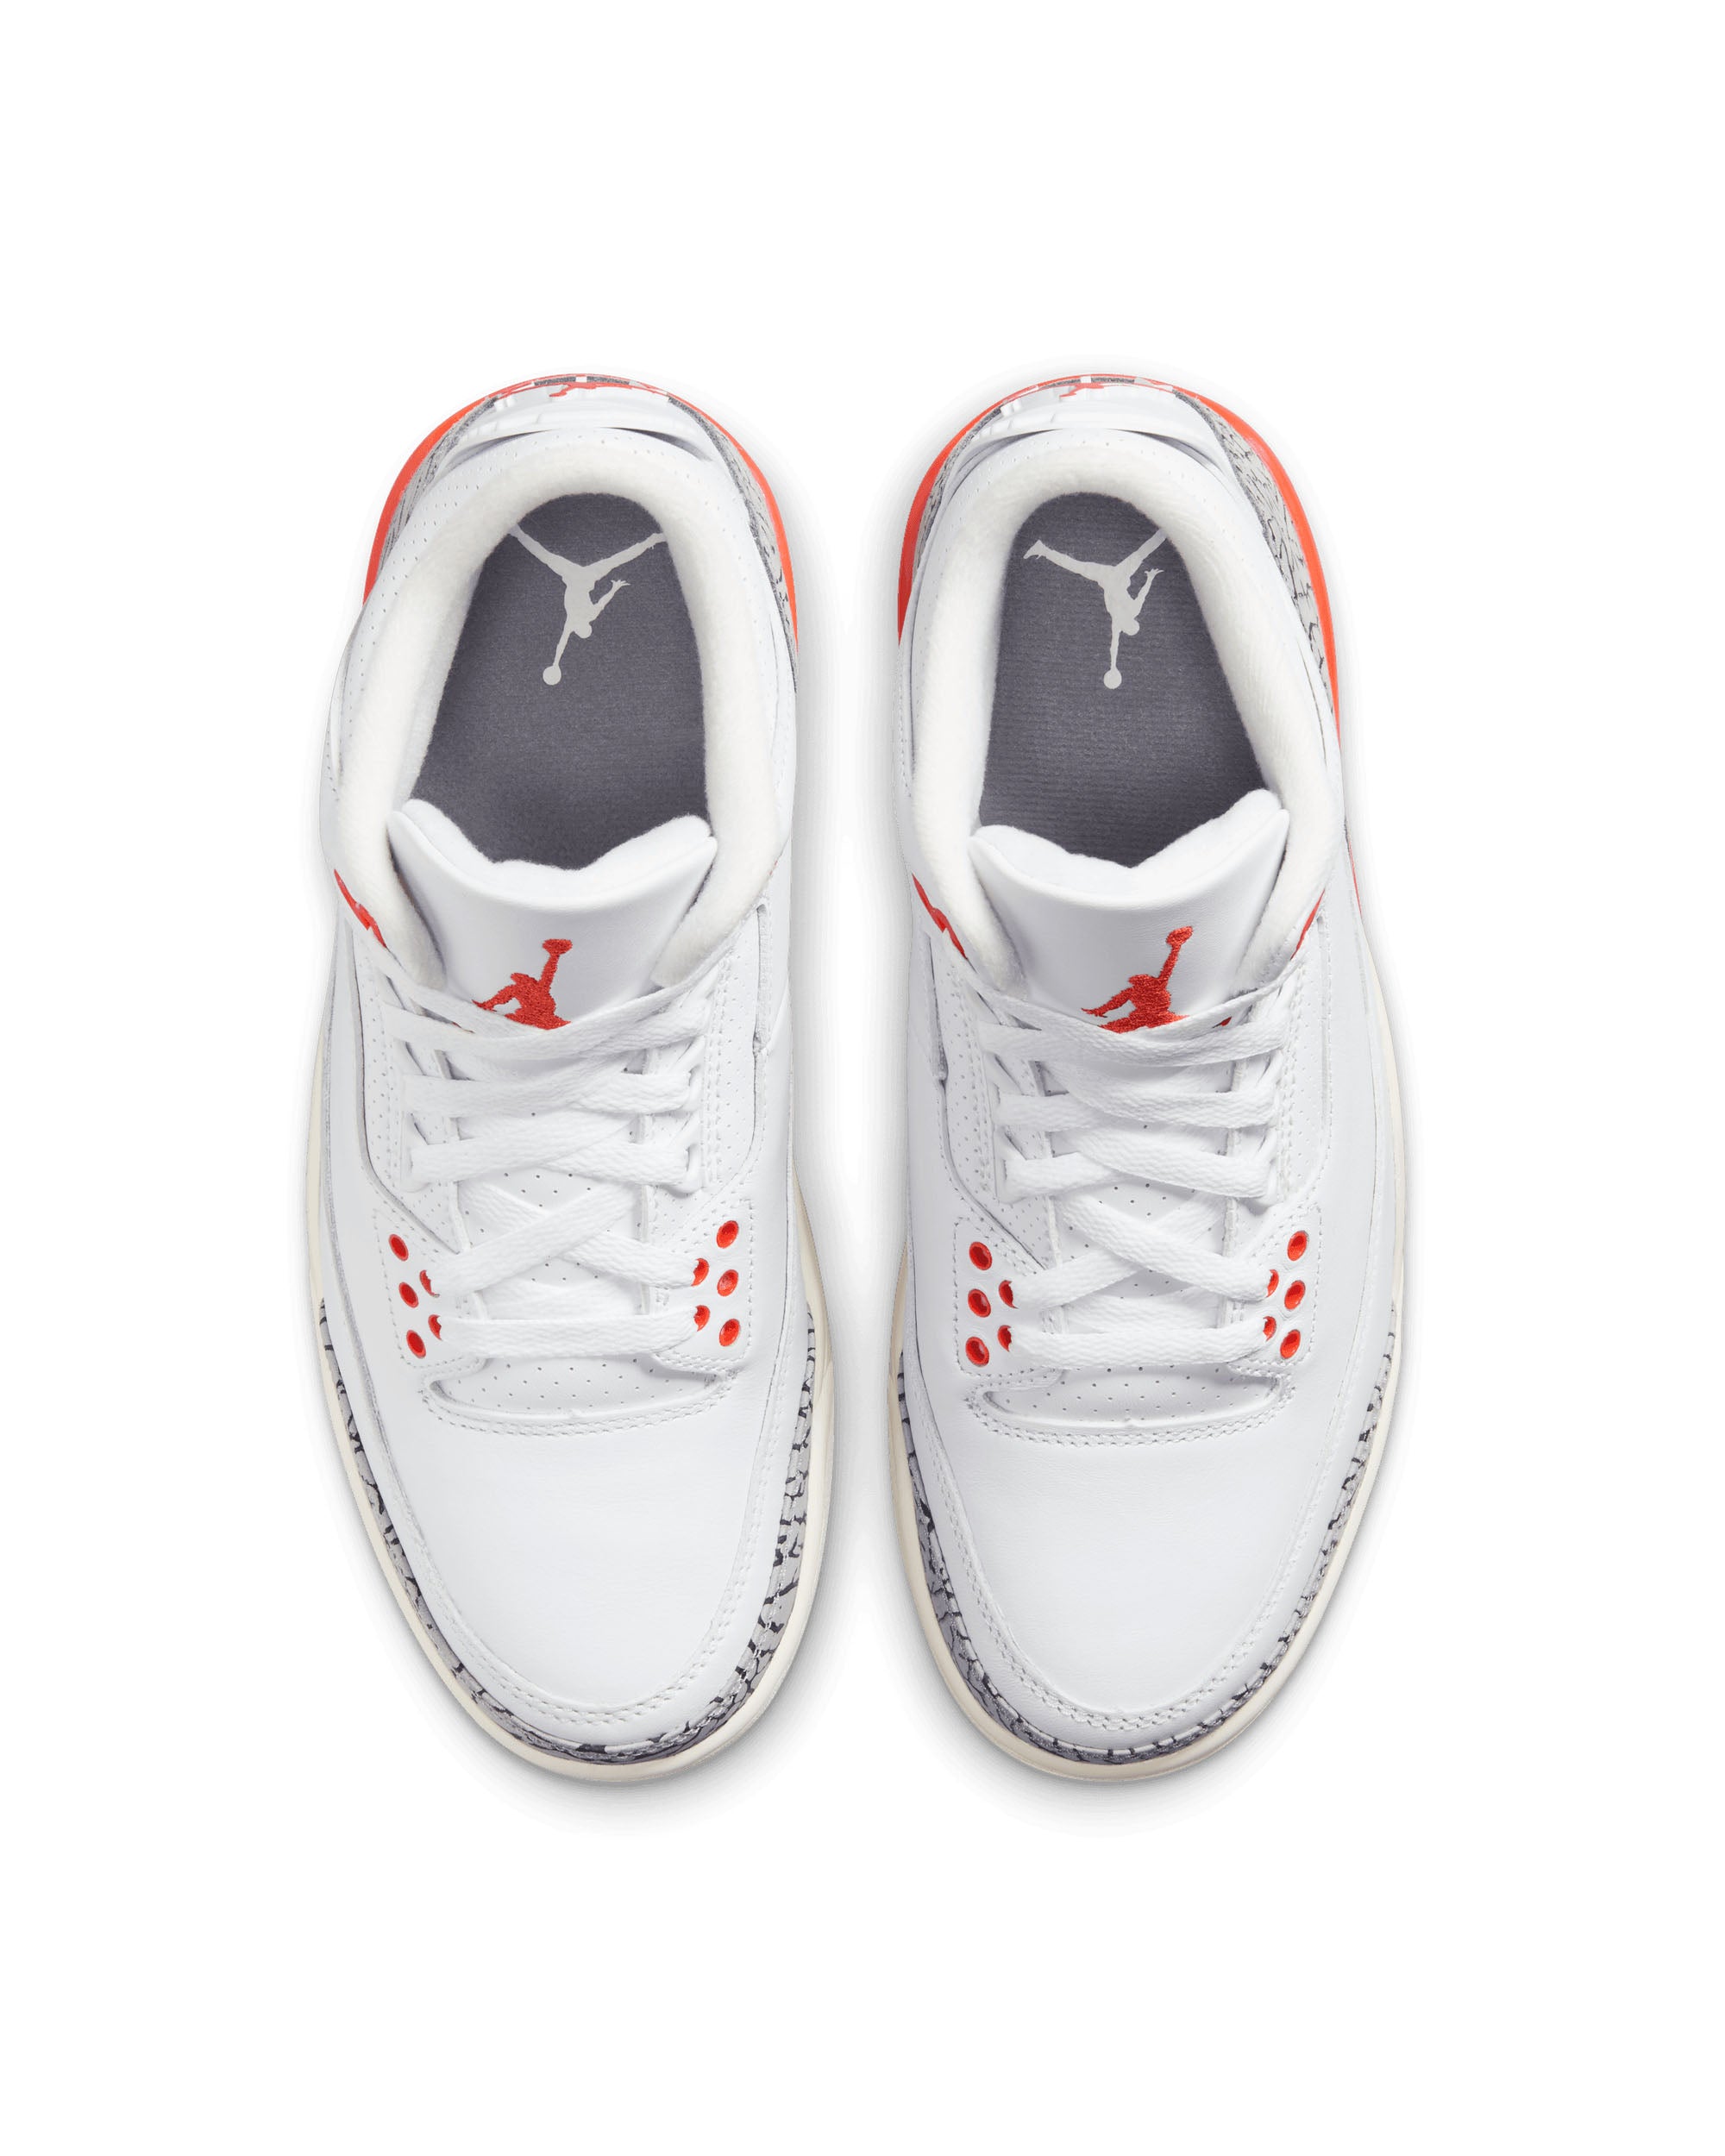 Womens Air Jordan 3 Retro - White / Cosmic Clay / Sail / Cement Grey